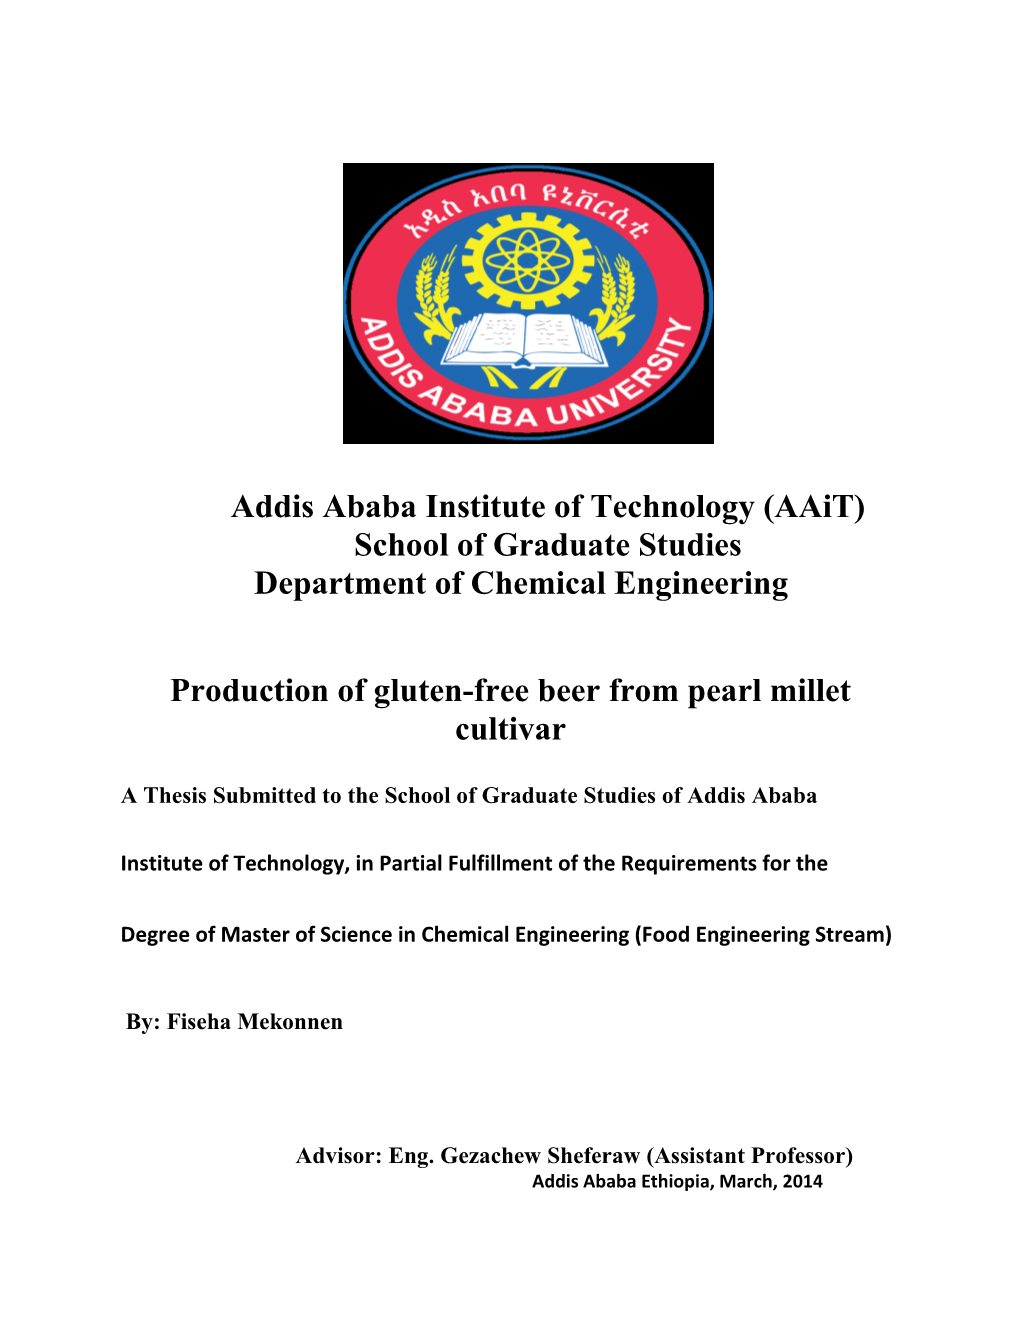 (Aait) School of Graduate Studies Department of Chemical Engineering